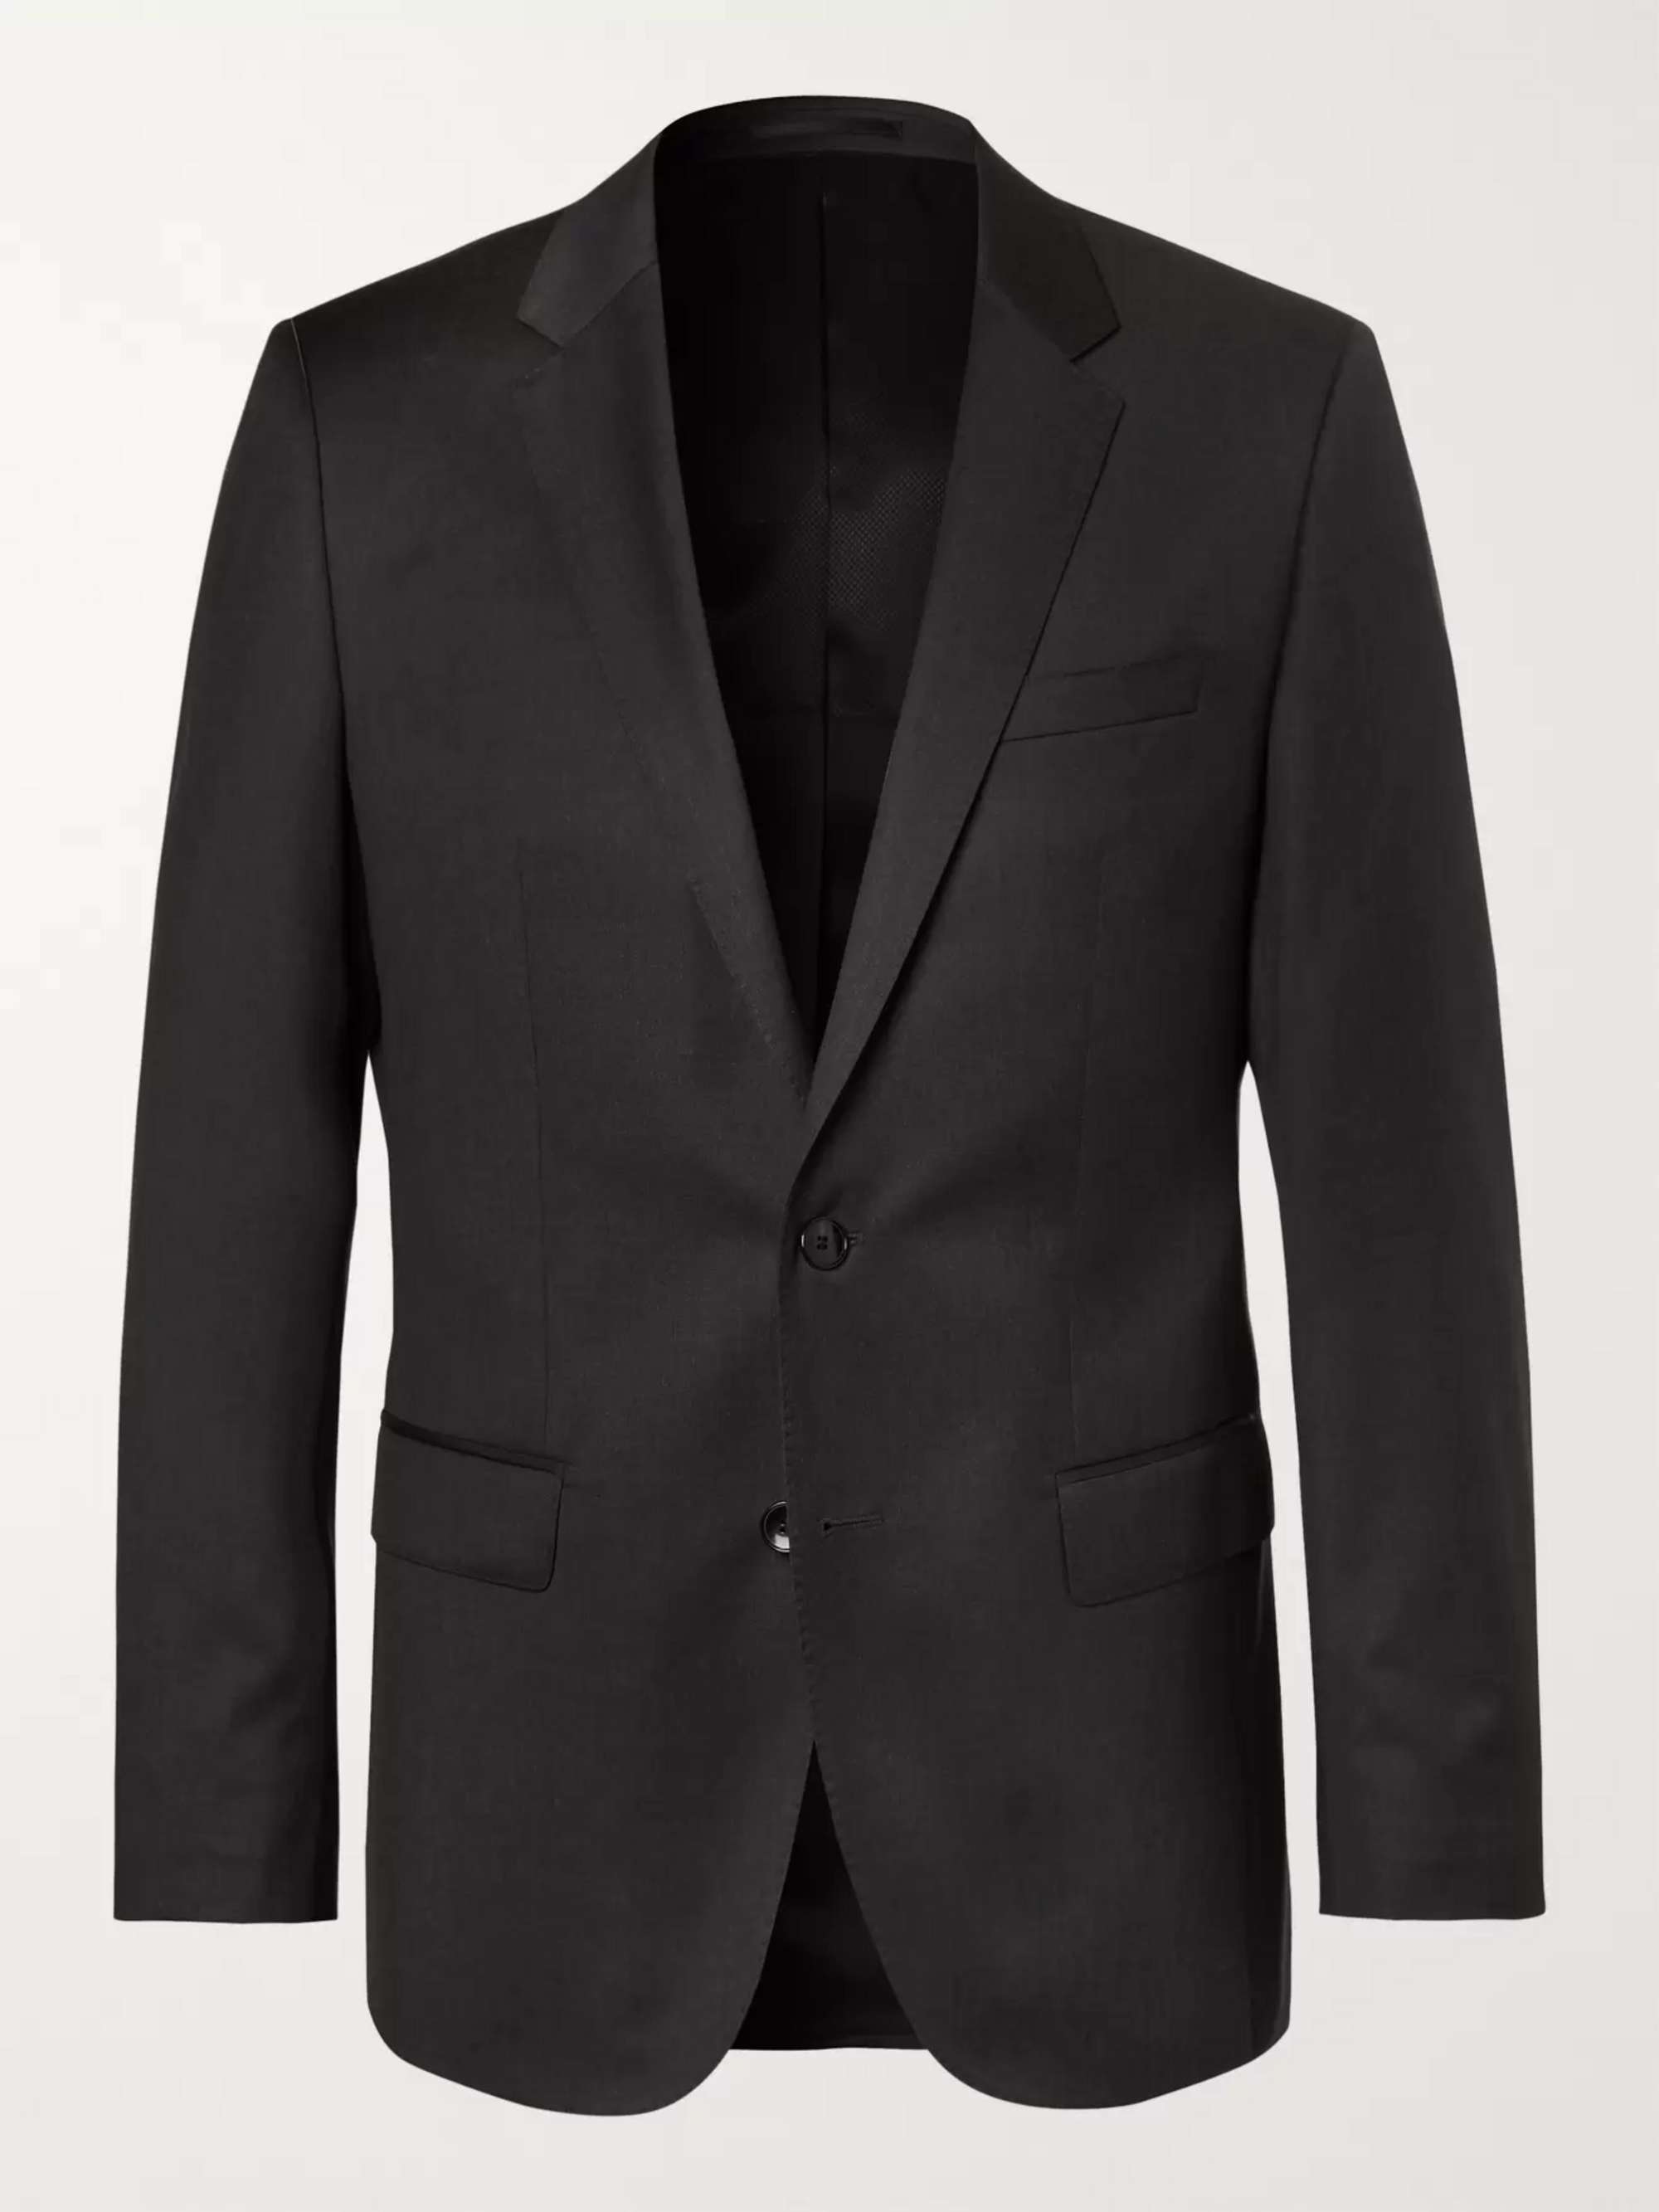 HUGO BOSS Grey Hayes Slim-Fit Super 120s Virgin Wool Suit Jacket | MR PORTER